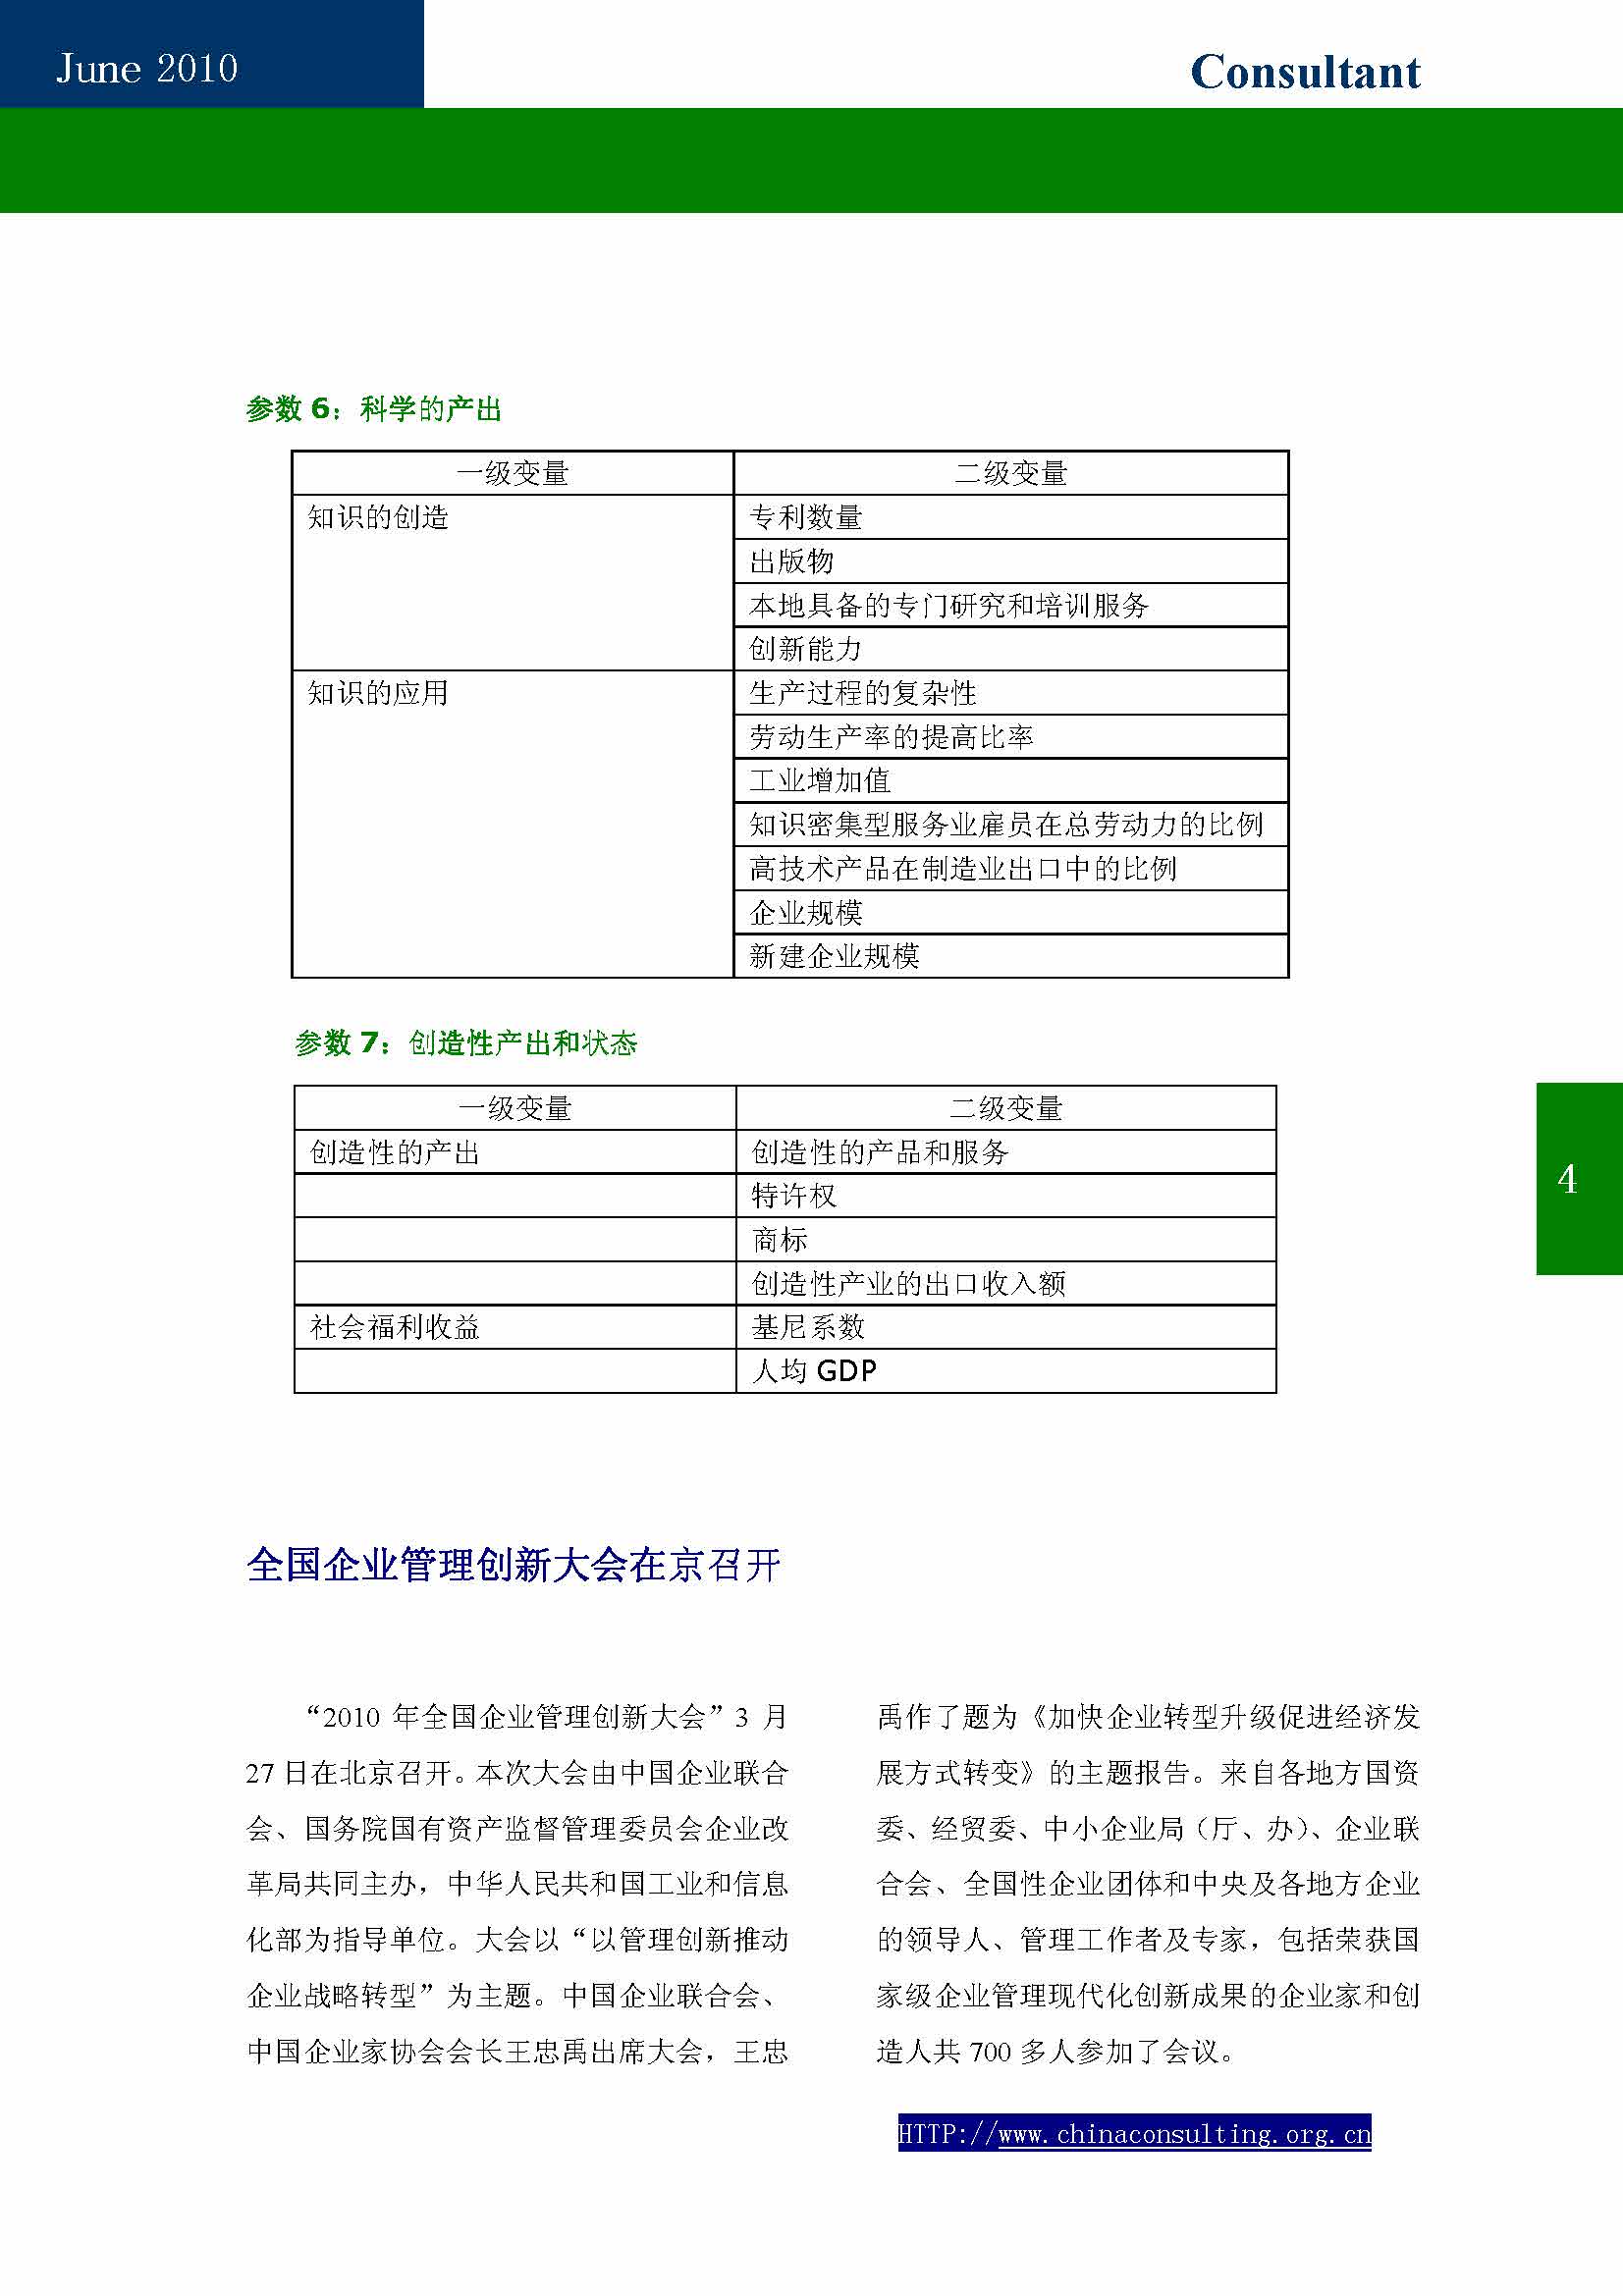 10中国科技咨询协会第十期会刊_页面_06.jpg